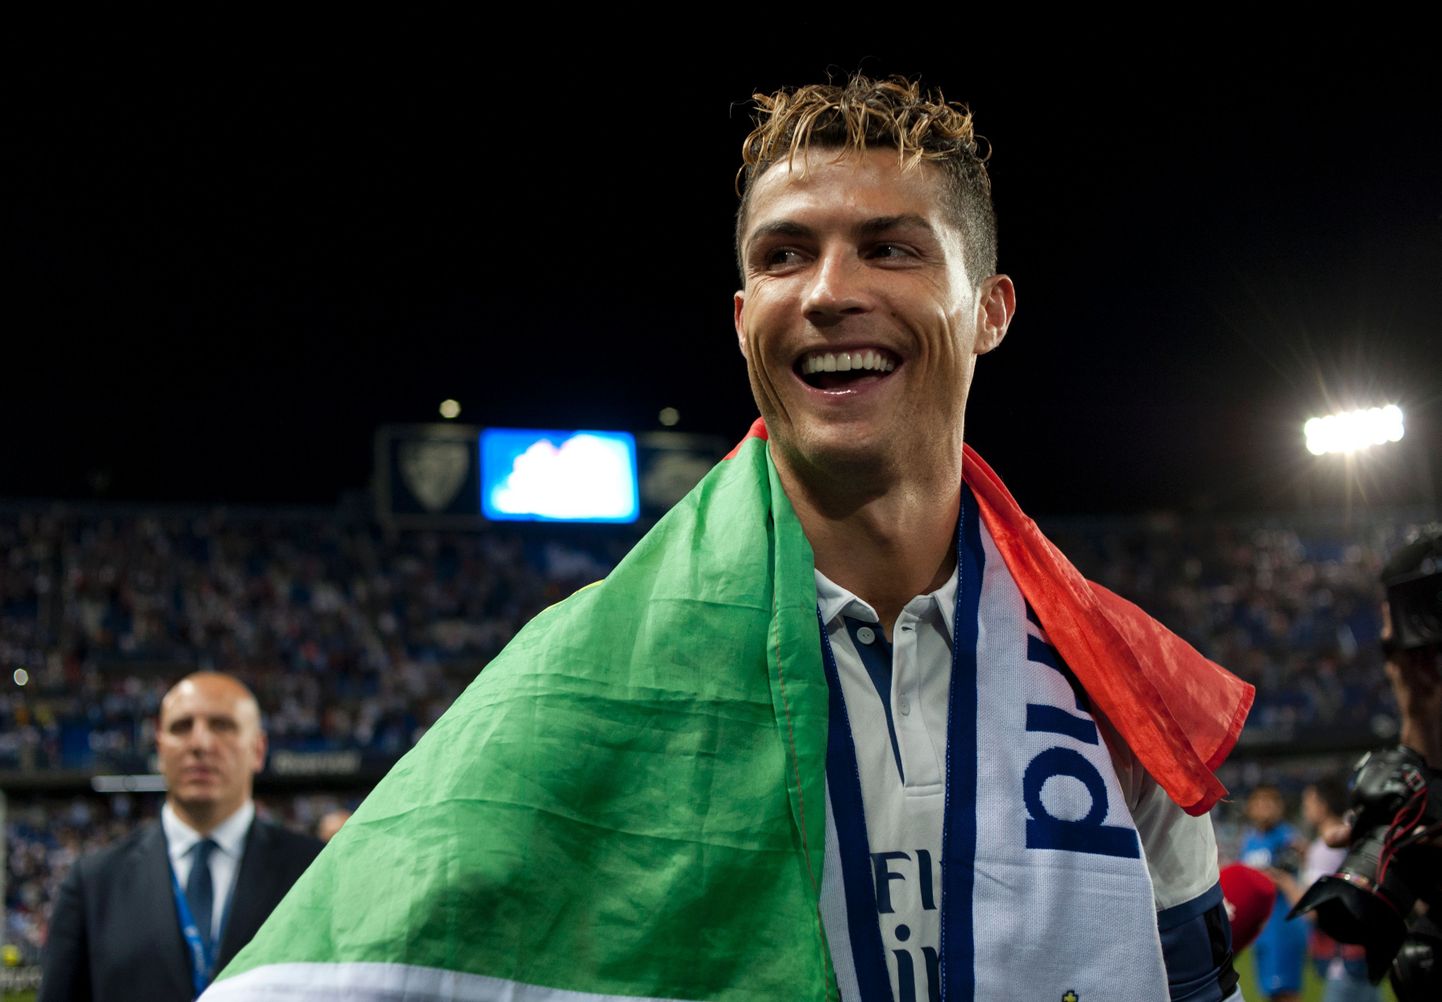 Cristiano Ronaldo tiitlite ja rekordite nimekiri võib lähemate kuude jooksul saada olulisi täiendusi.